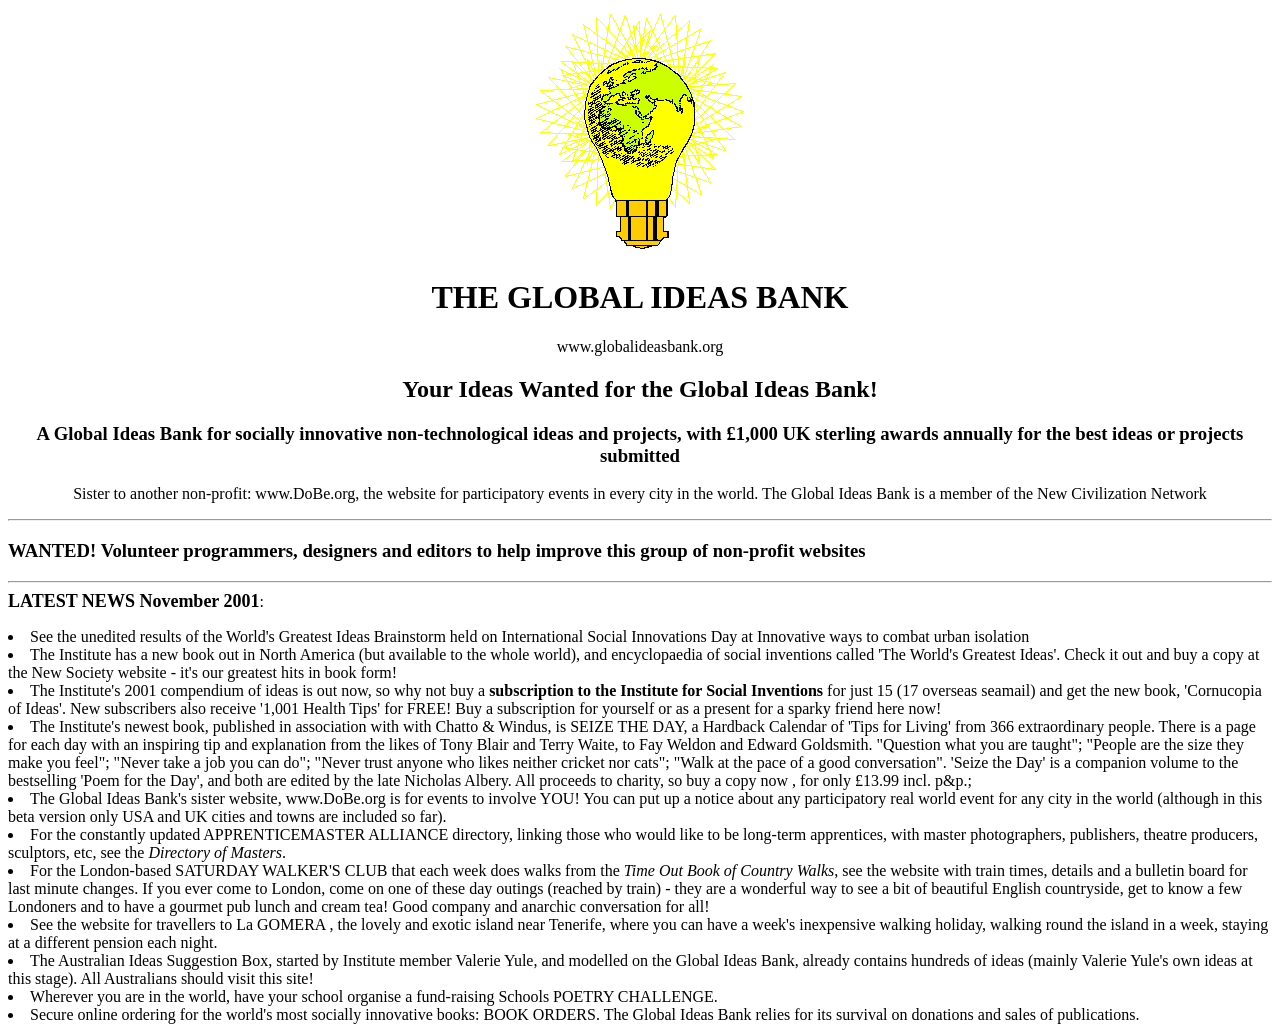 globalideasbank.org